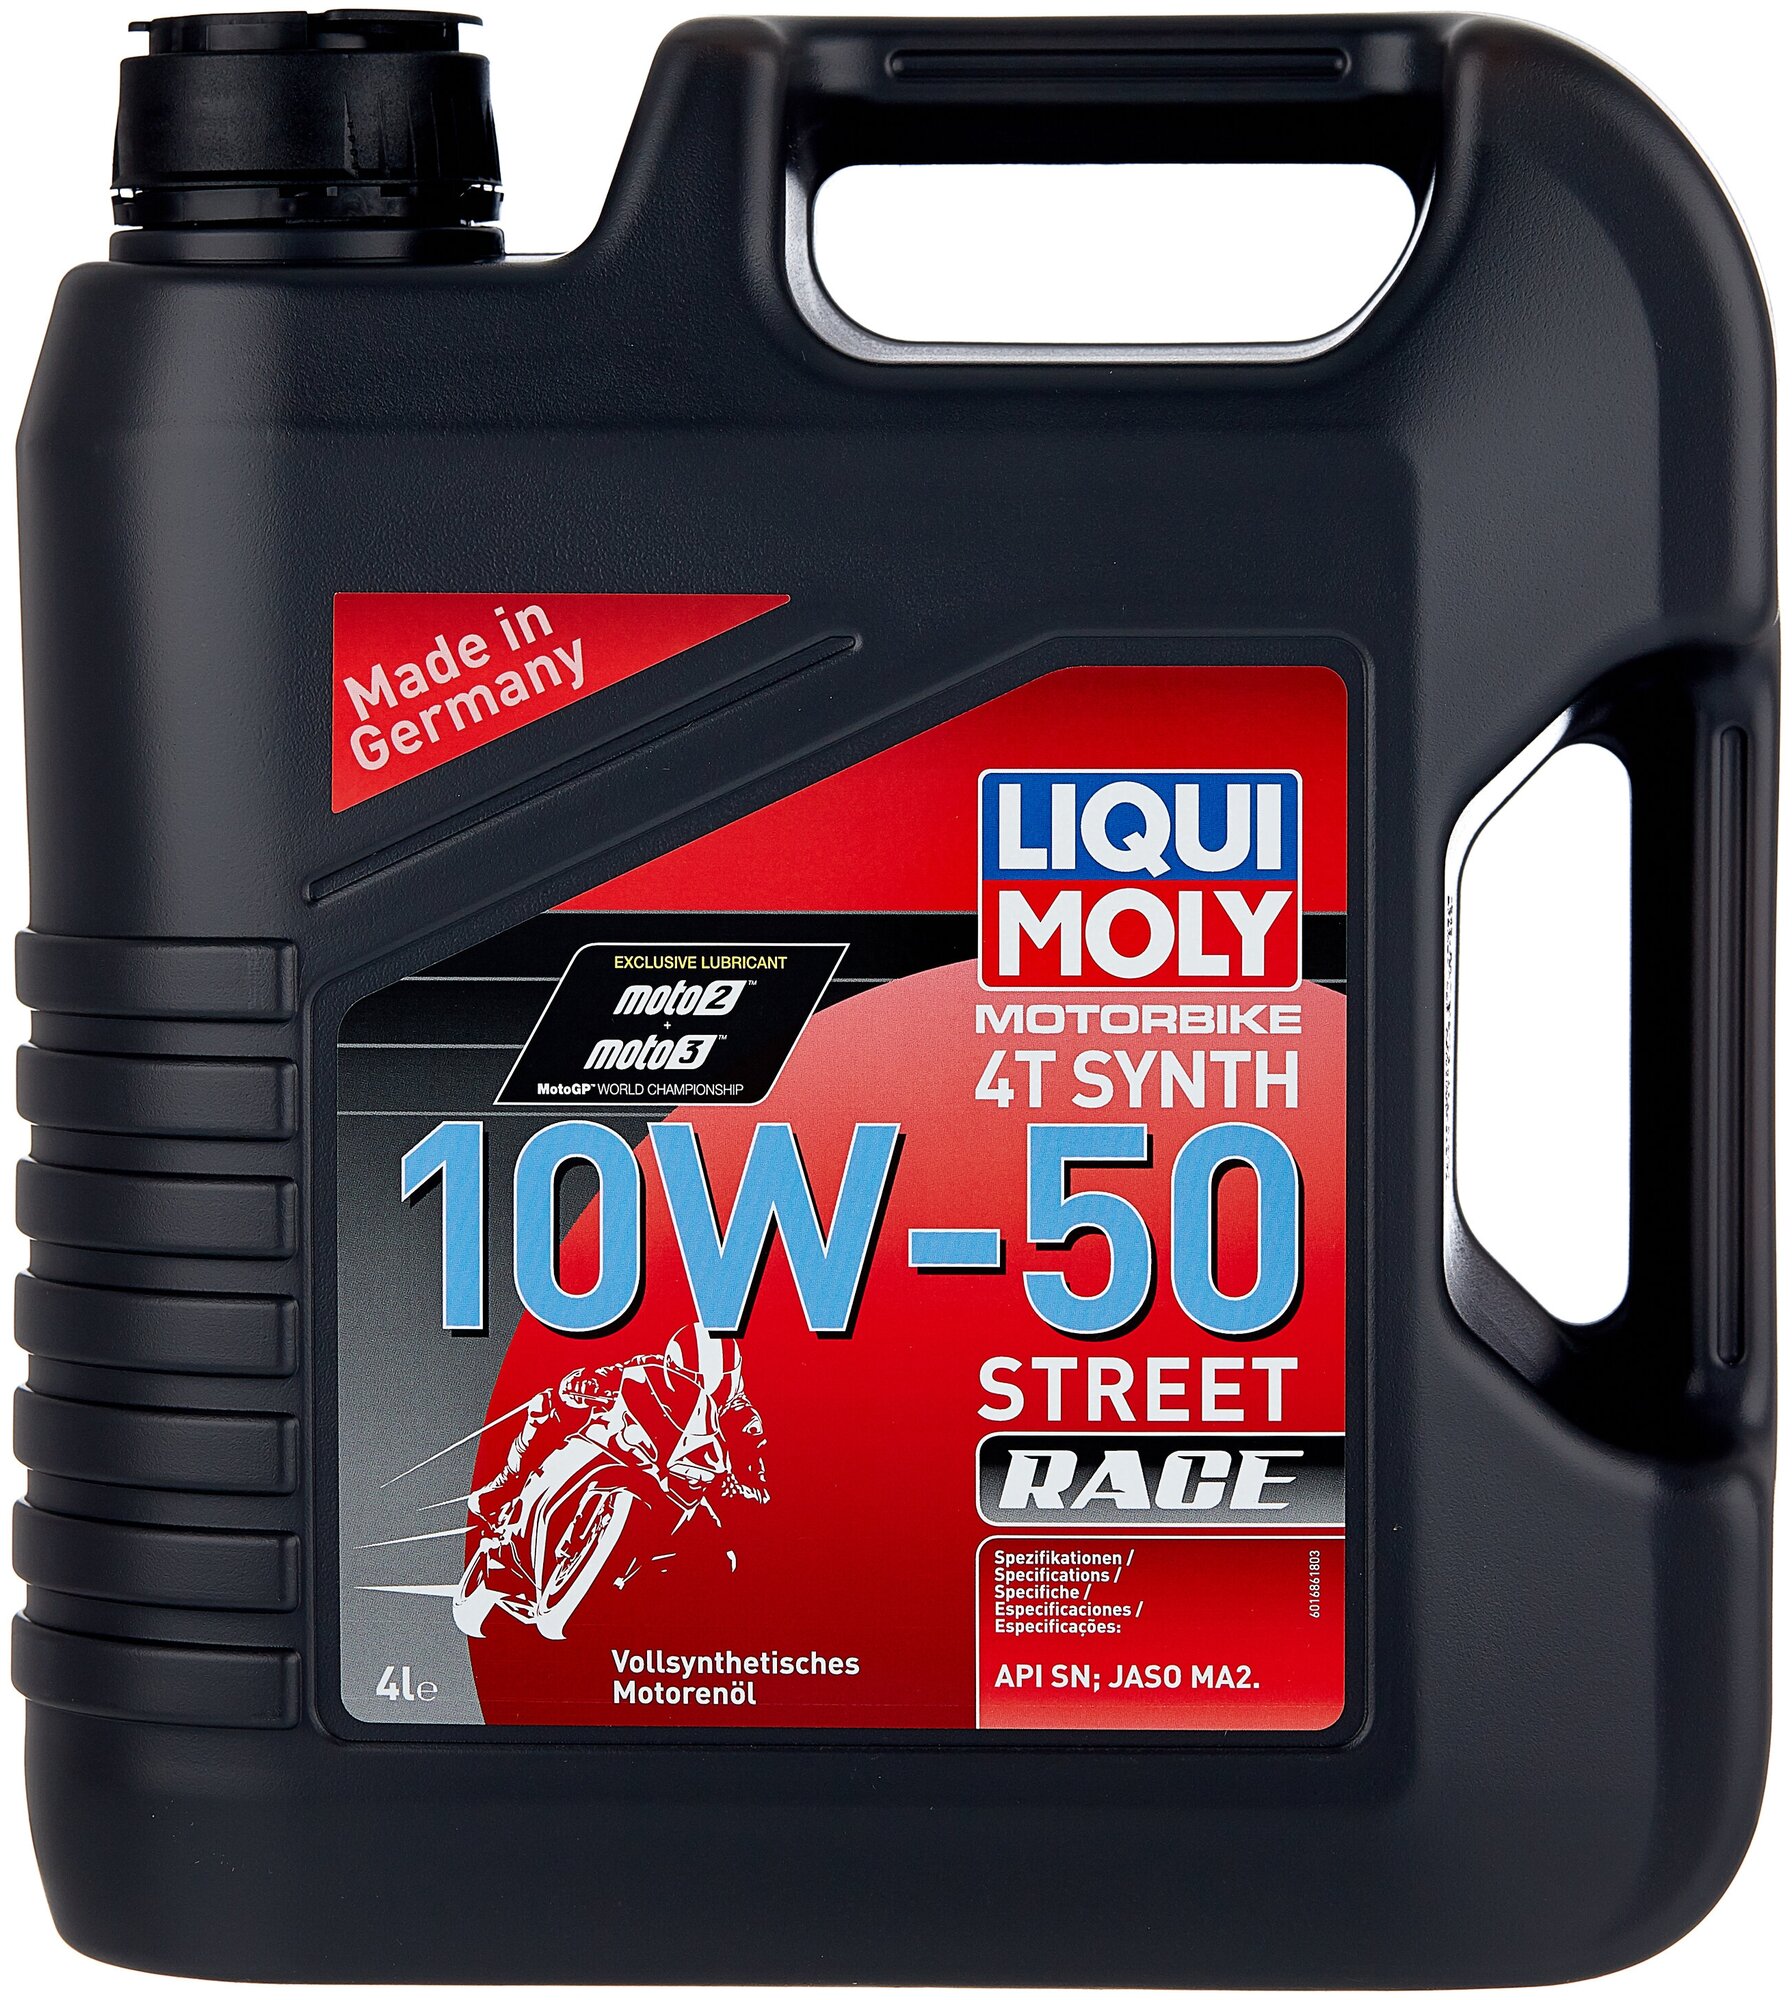 Синтетическое моторное масло LIQUI MOLY Motorbike 4T Synth Street Race 10W-50, 4 л